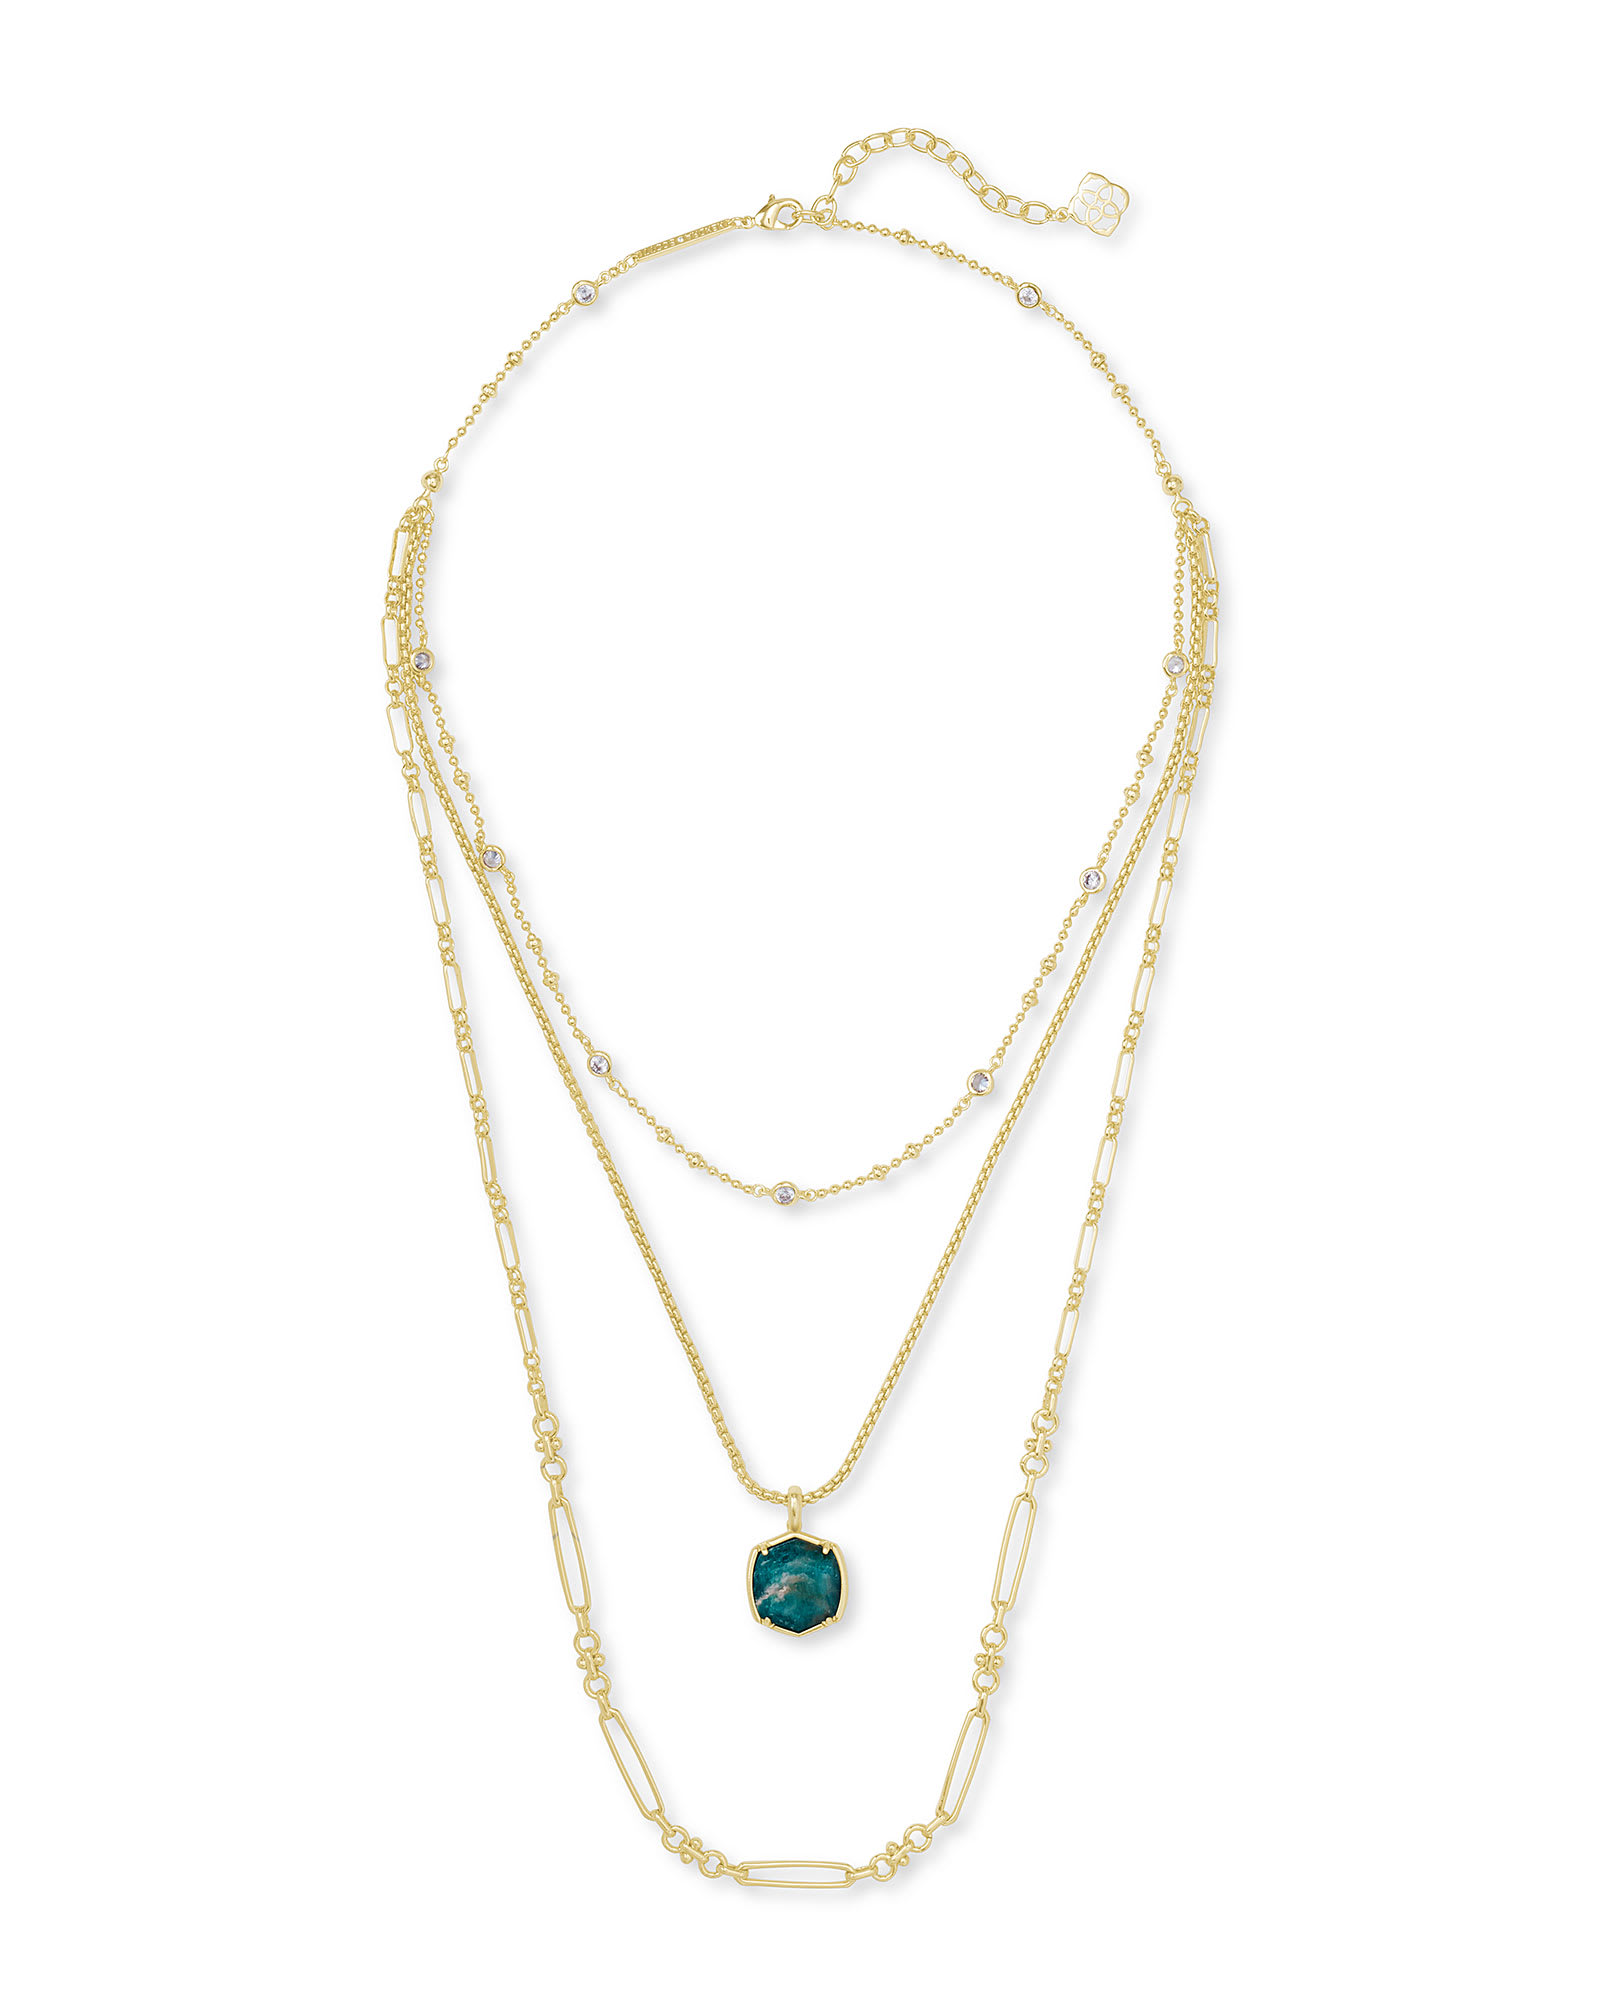 Davis Gold Triple Strand Necklace in Dark Teal Amazonite